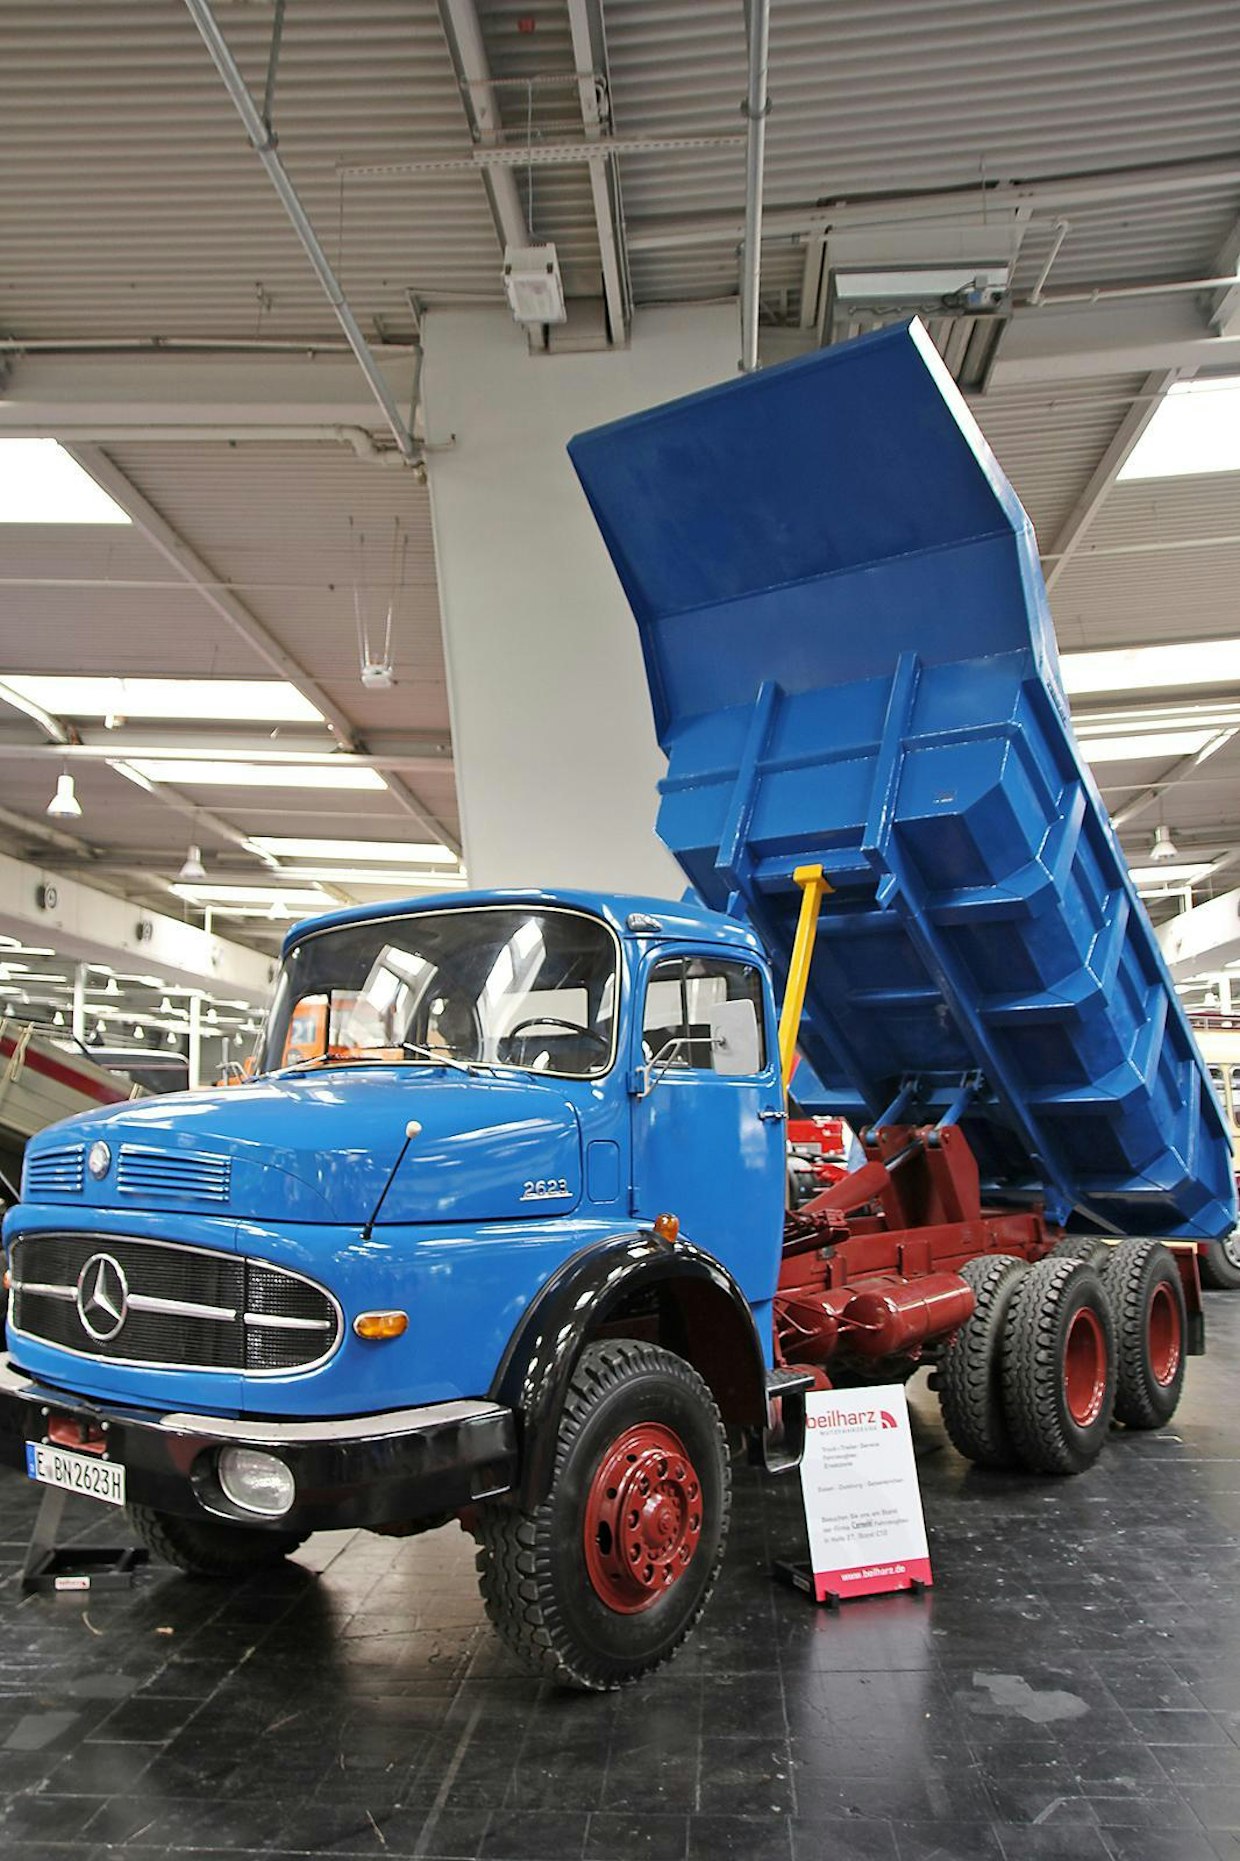 Mercedes- Benz L2623 valmistettiin vuosina 1967–1969, ja sitä käytettiin pääasiassa maansiirtoautona 6x4 akselistolla. Suomessa näistä rakennettiin myös puutavaran kuljetuksiin. Moottorina käytettiin kuusisylinteristä, 11,58 litraista OM 355, joka antoi 230 hv tehon. Auton kokonaispaino on 26 tonnia ja hyötykuormaa kulkee mukana noin 15 tonnia.